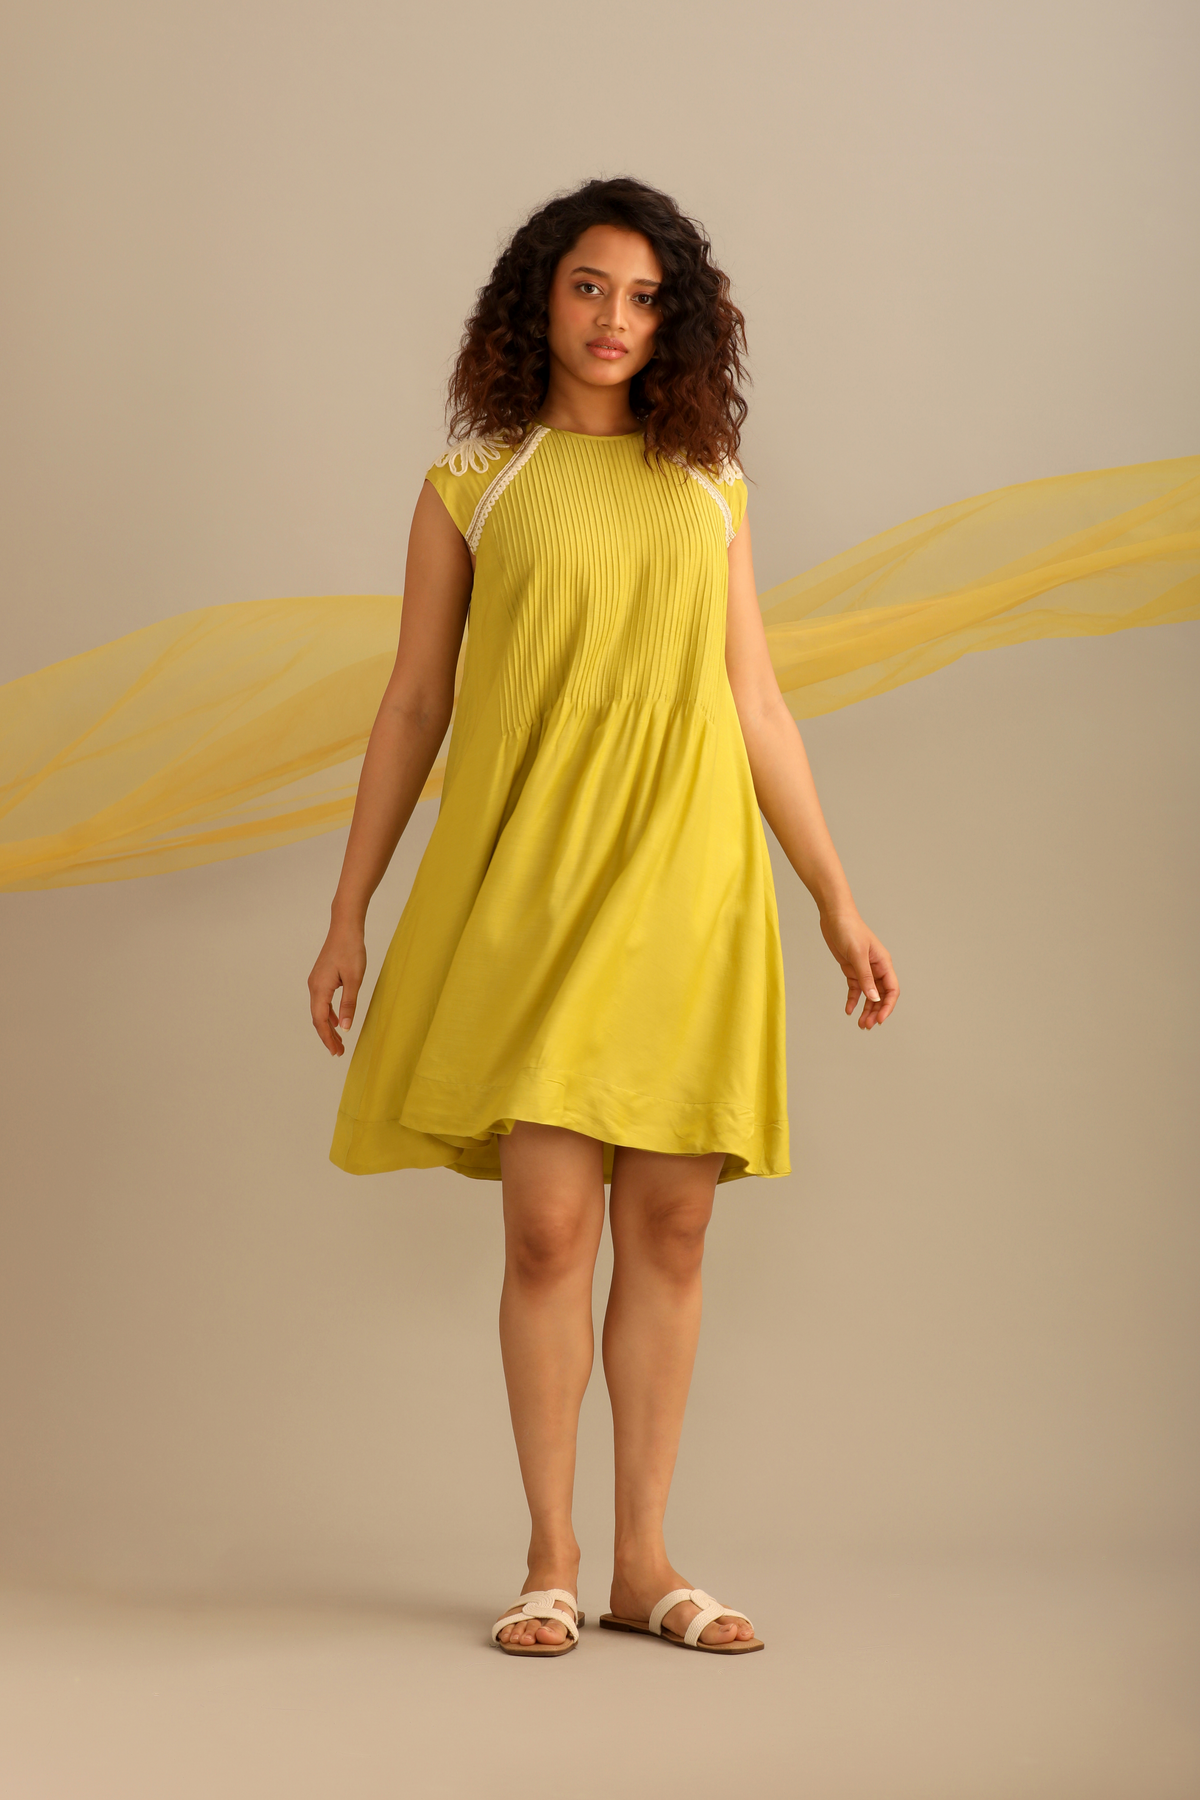 A Lime Cotton Dress